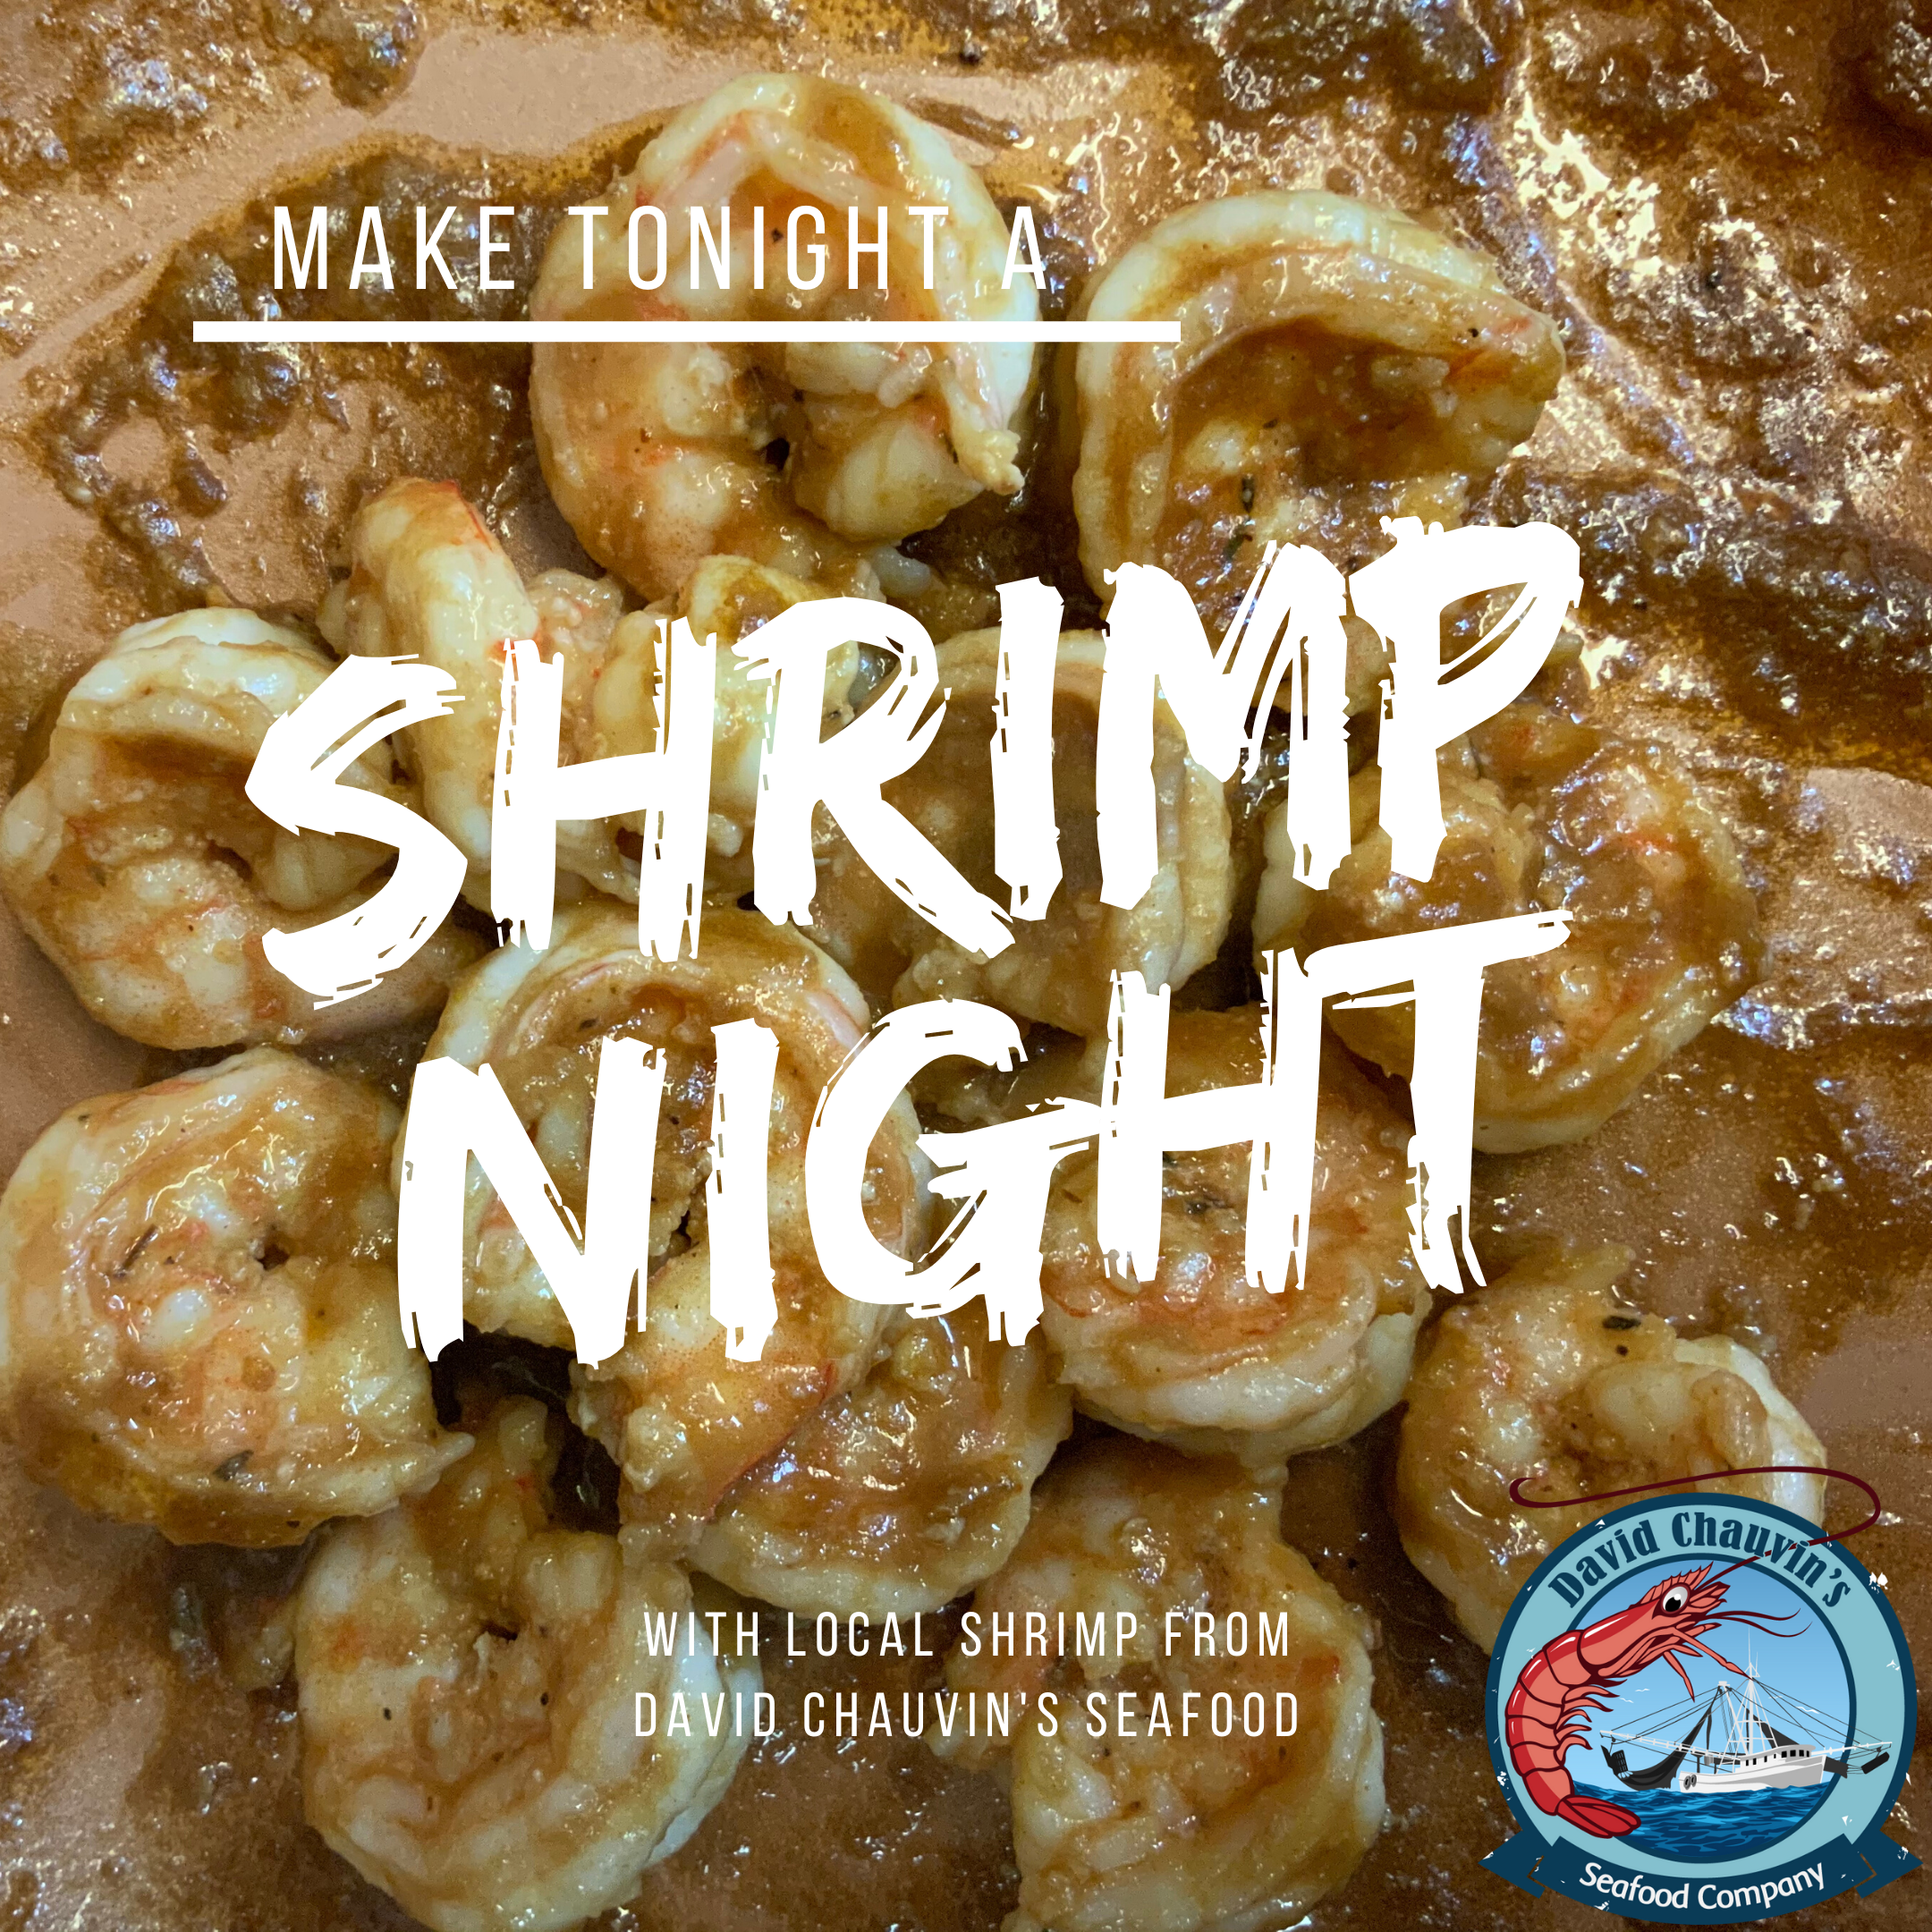 Make It A Louisiana Shrimp Night!